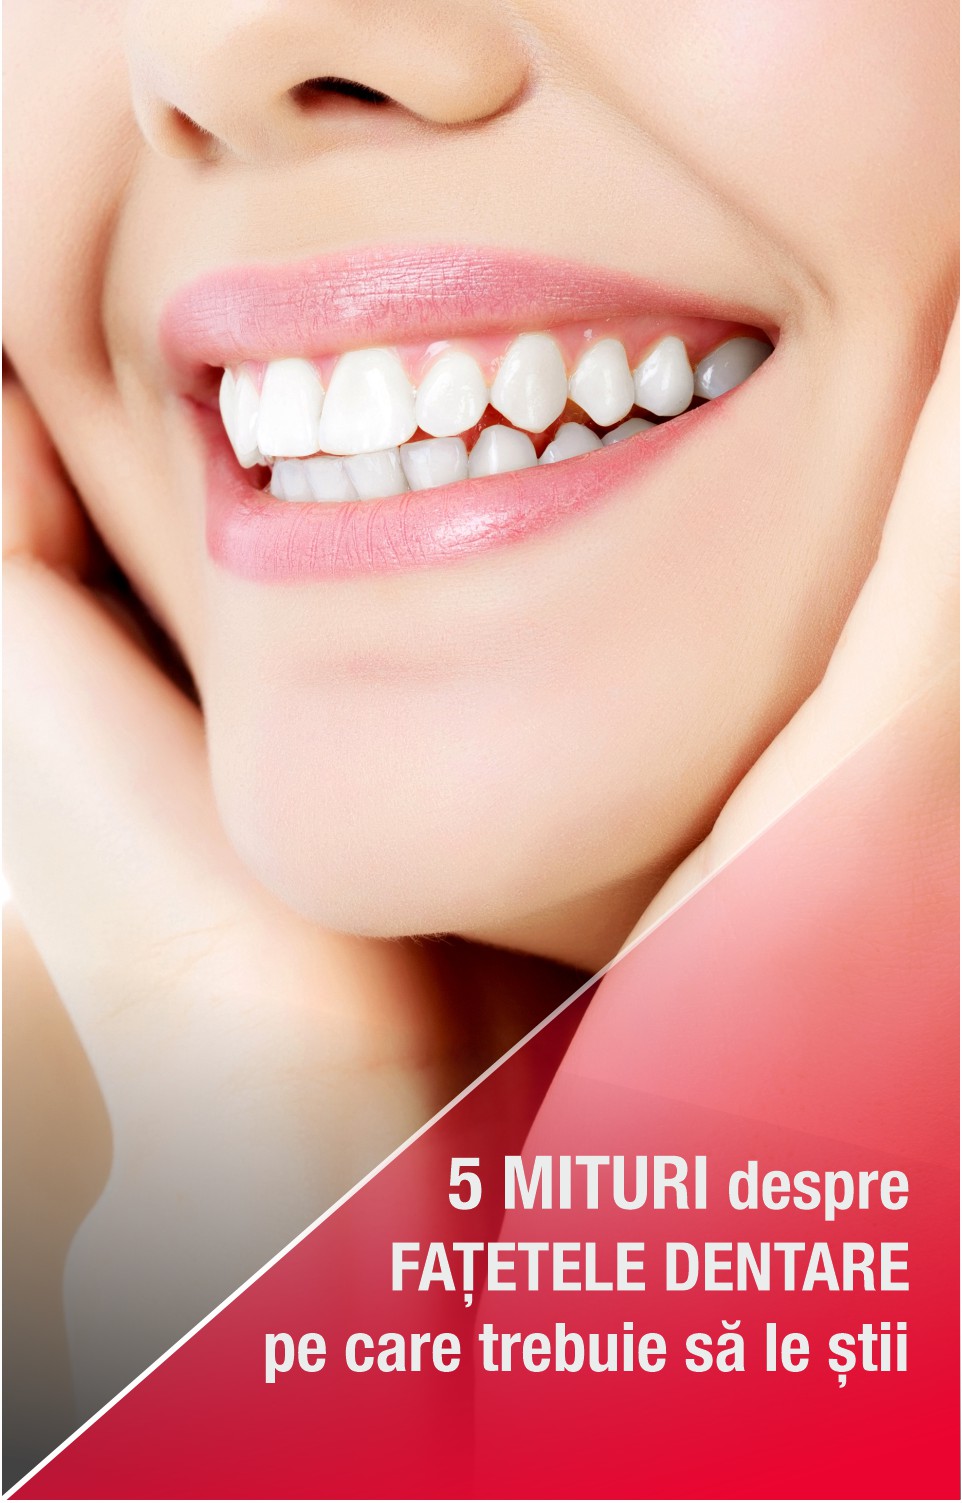 Cinci mituri despre fațetele dentare pe care trebuie să le știi